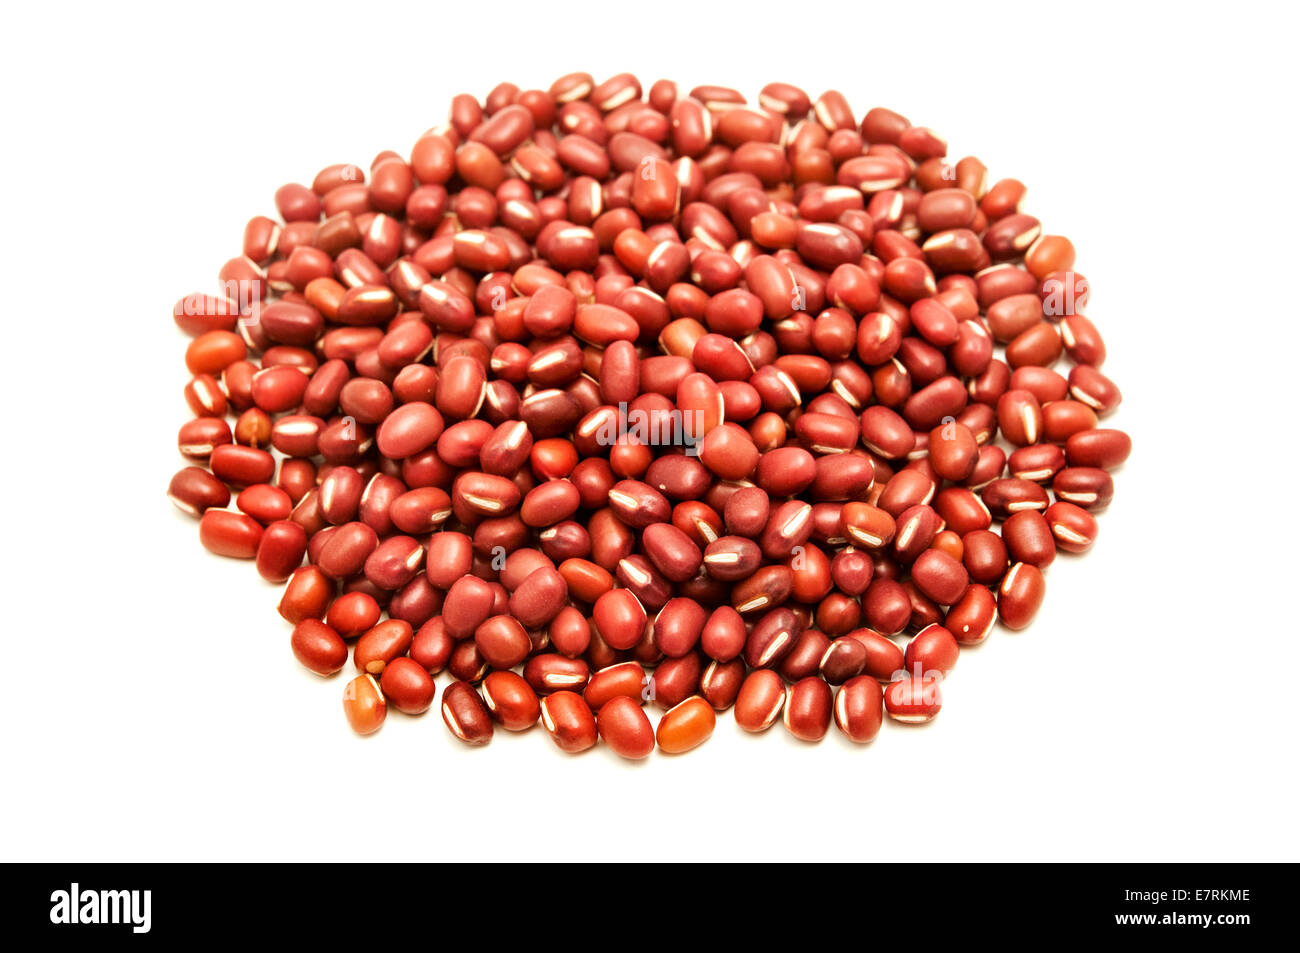 Adzuki beans on a white background Stock Photo